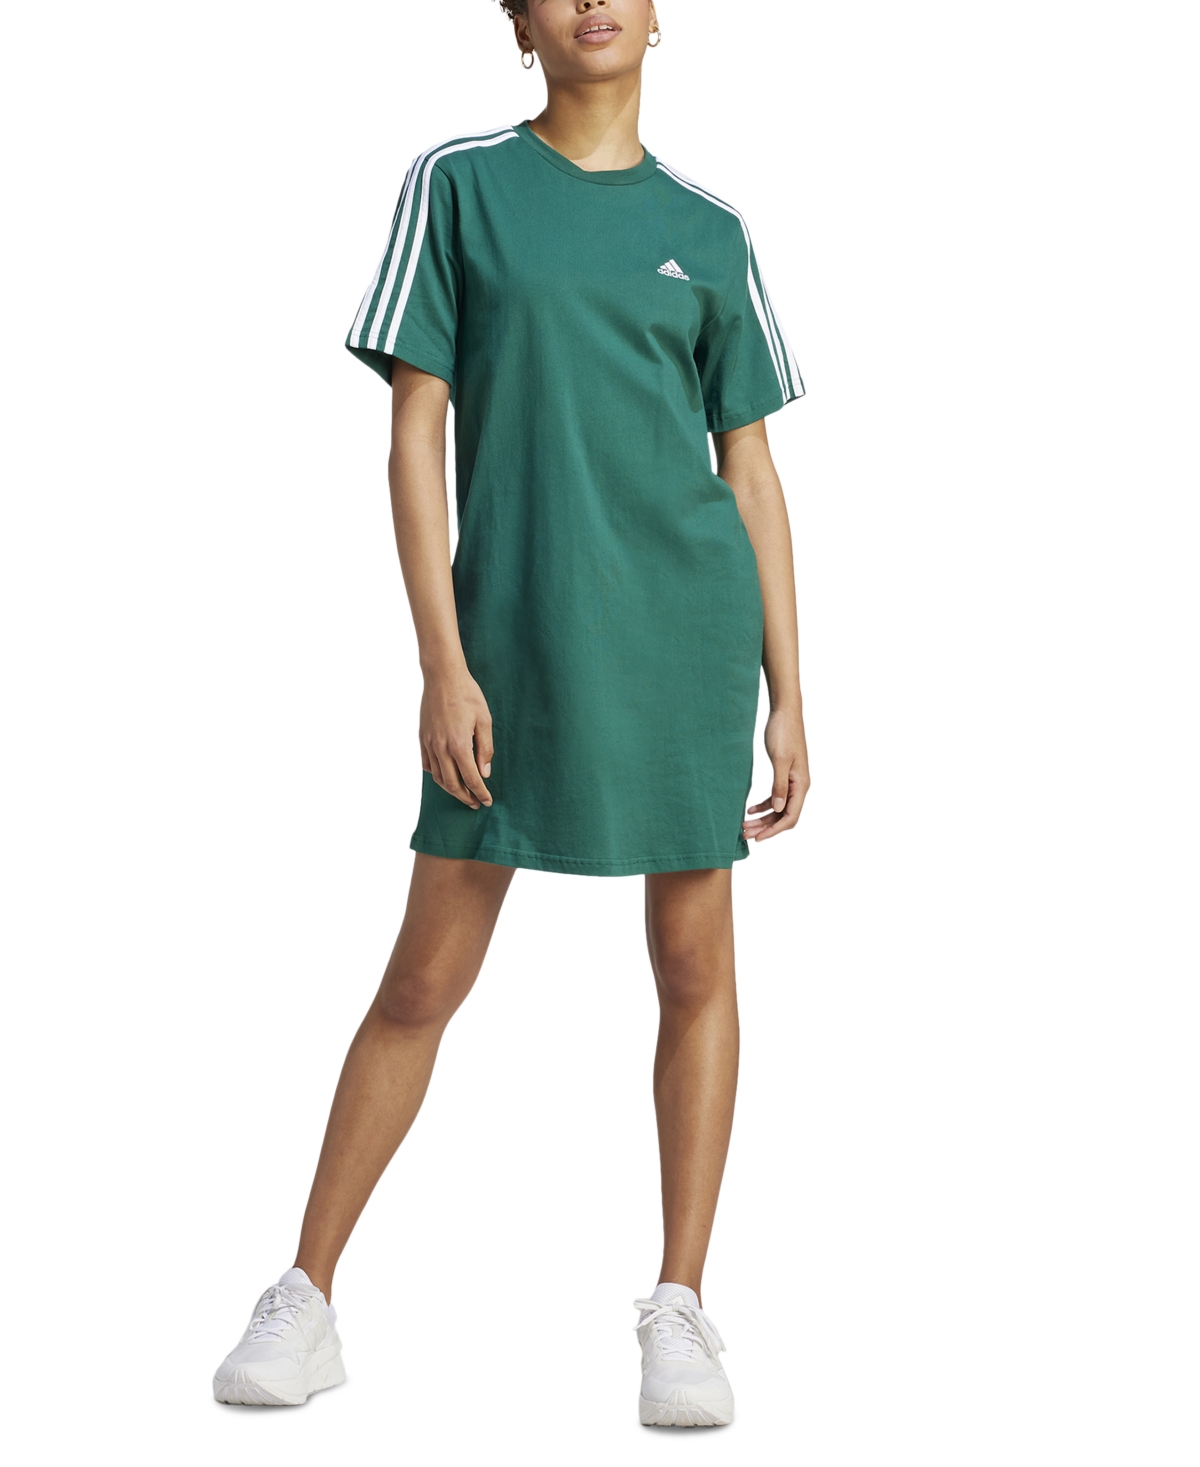 Adidas Originals Women's Active Essentials 3-stripes Single Jersey Boyfriend Tee Dress In Collegiate Green,white